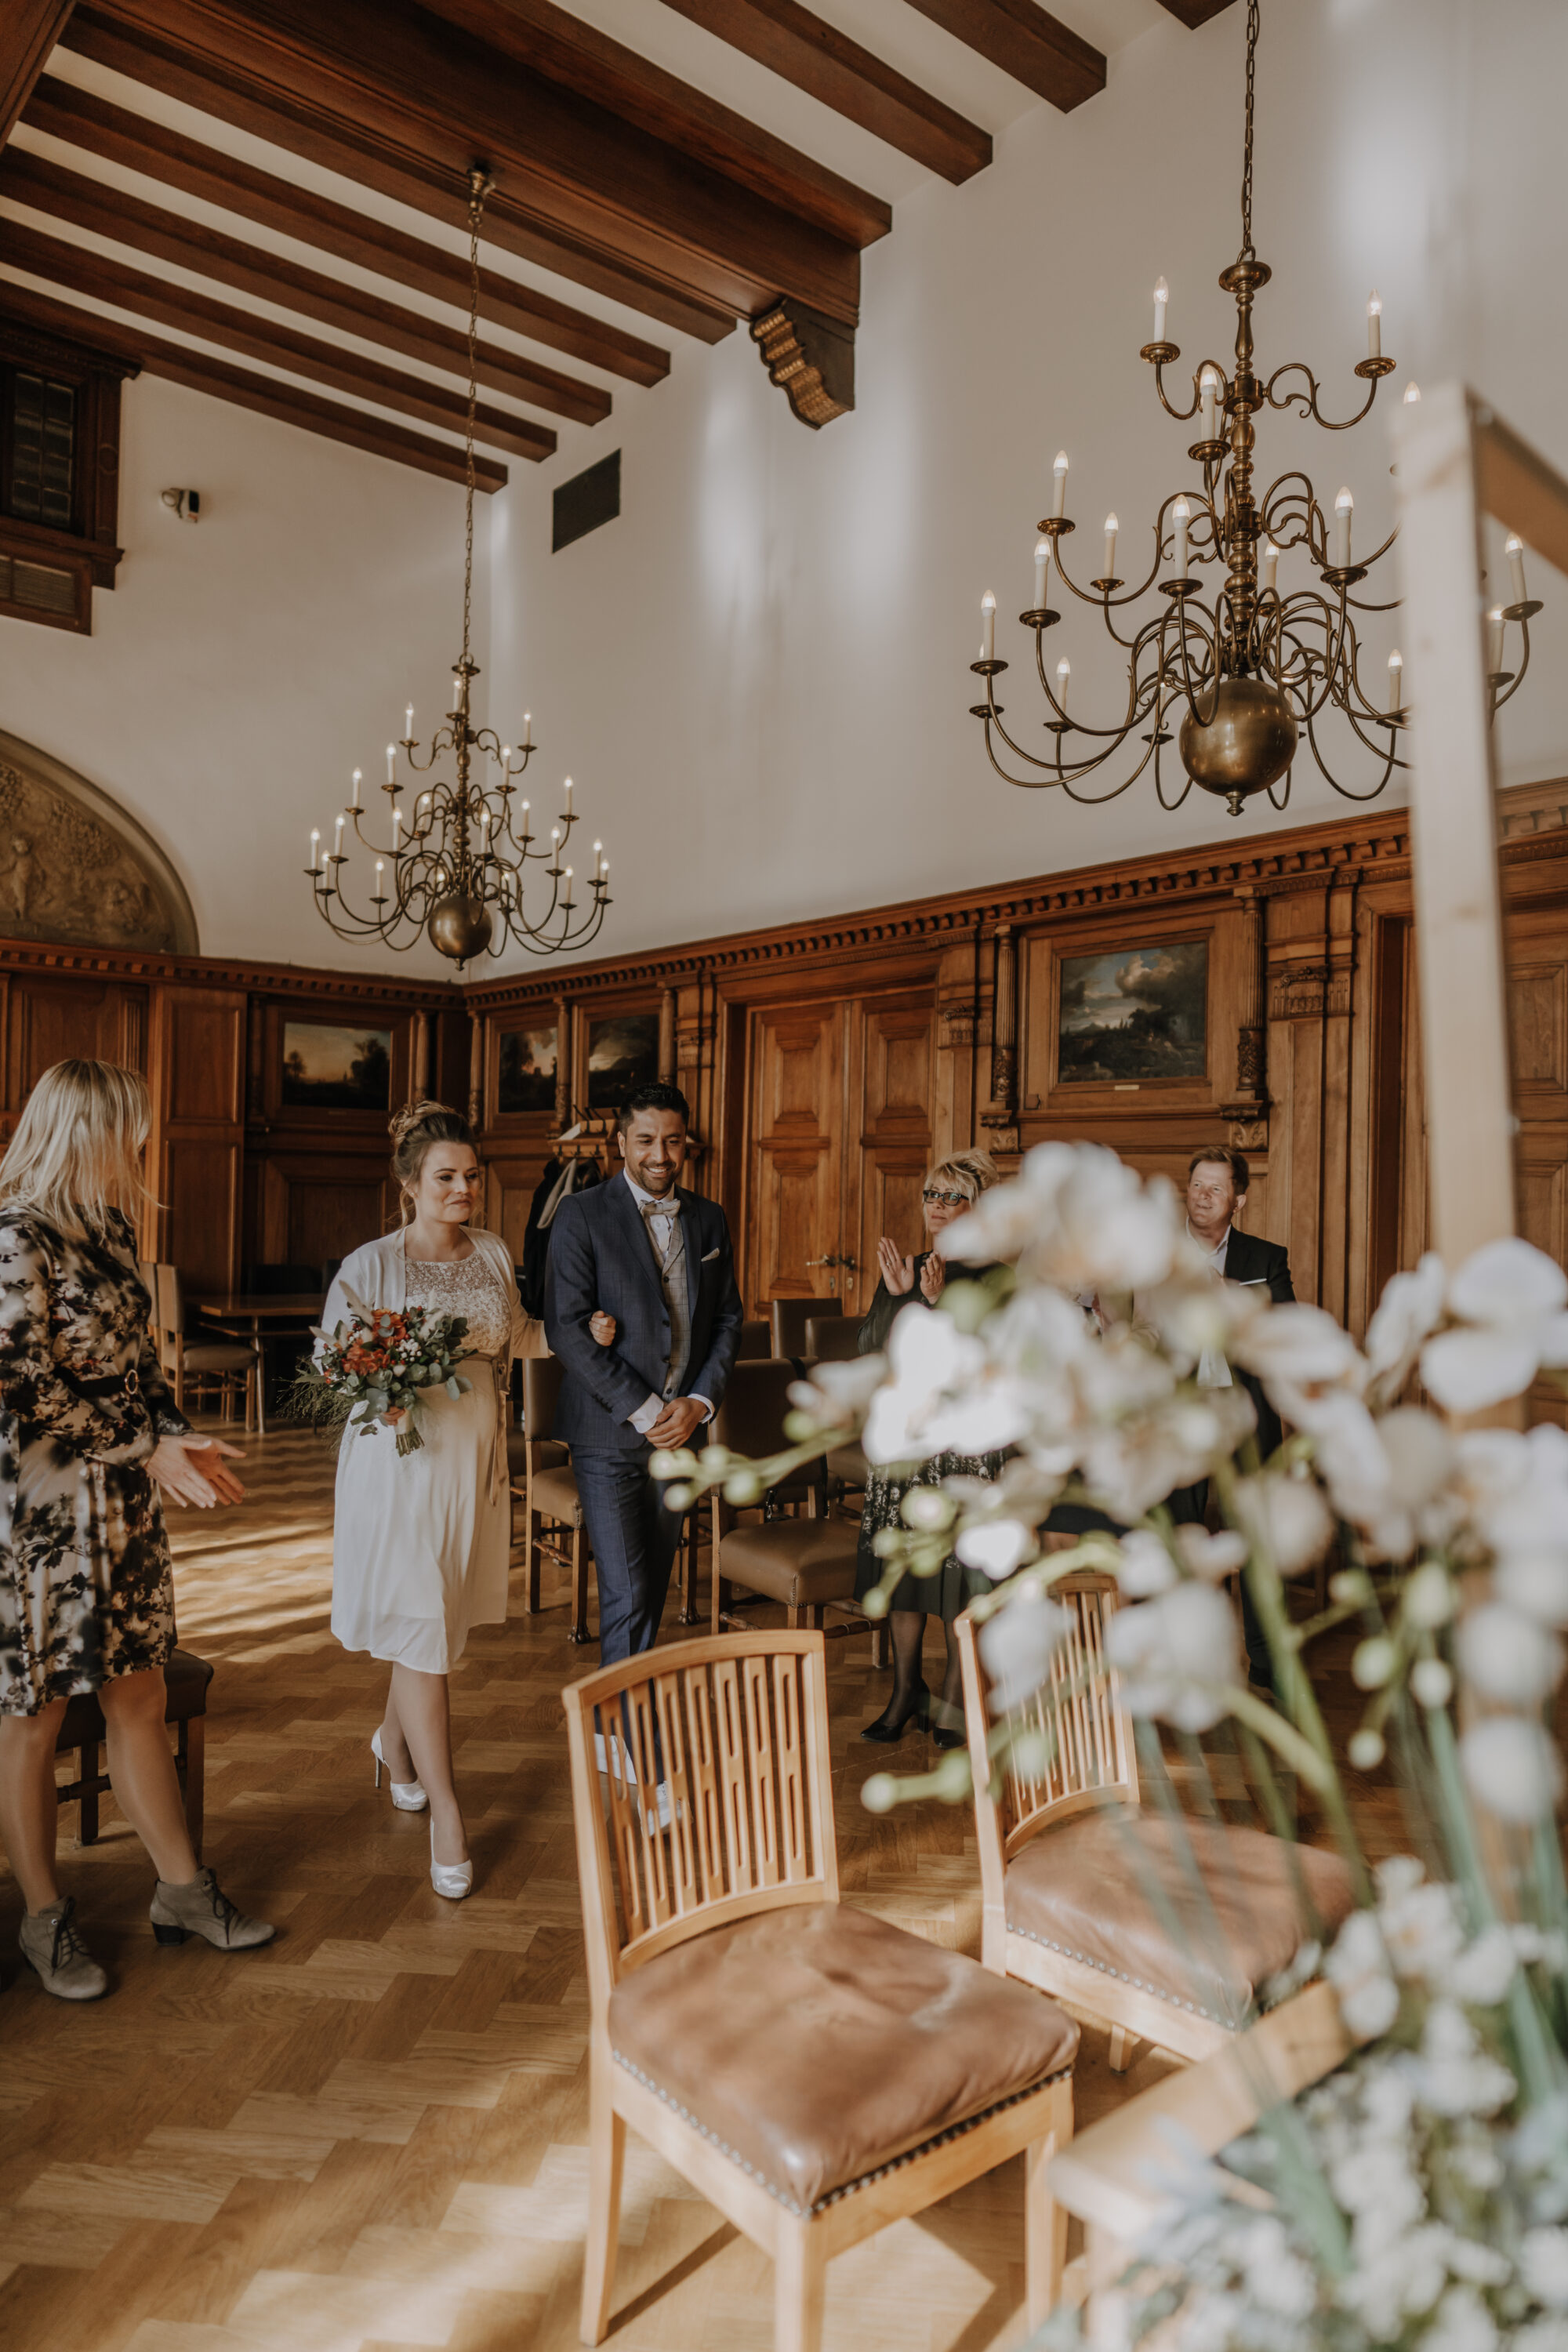 Brautpaar läuft auf Trautisch zu, Großer Ratssaal Bergisch Gladbach, Blumenstrauß, Holzvertäfelungen, Gemälde, Kronleuchter